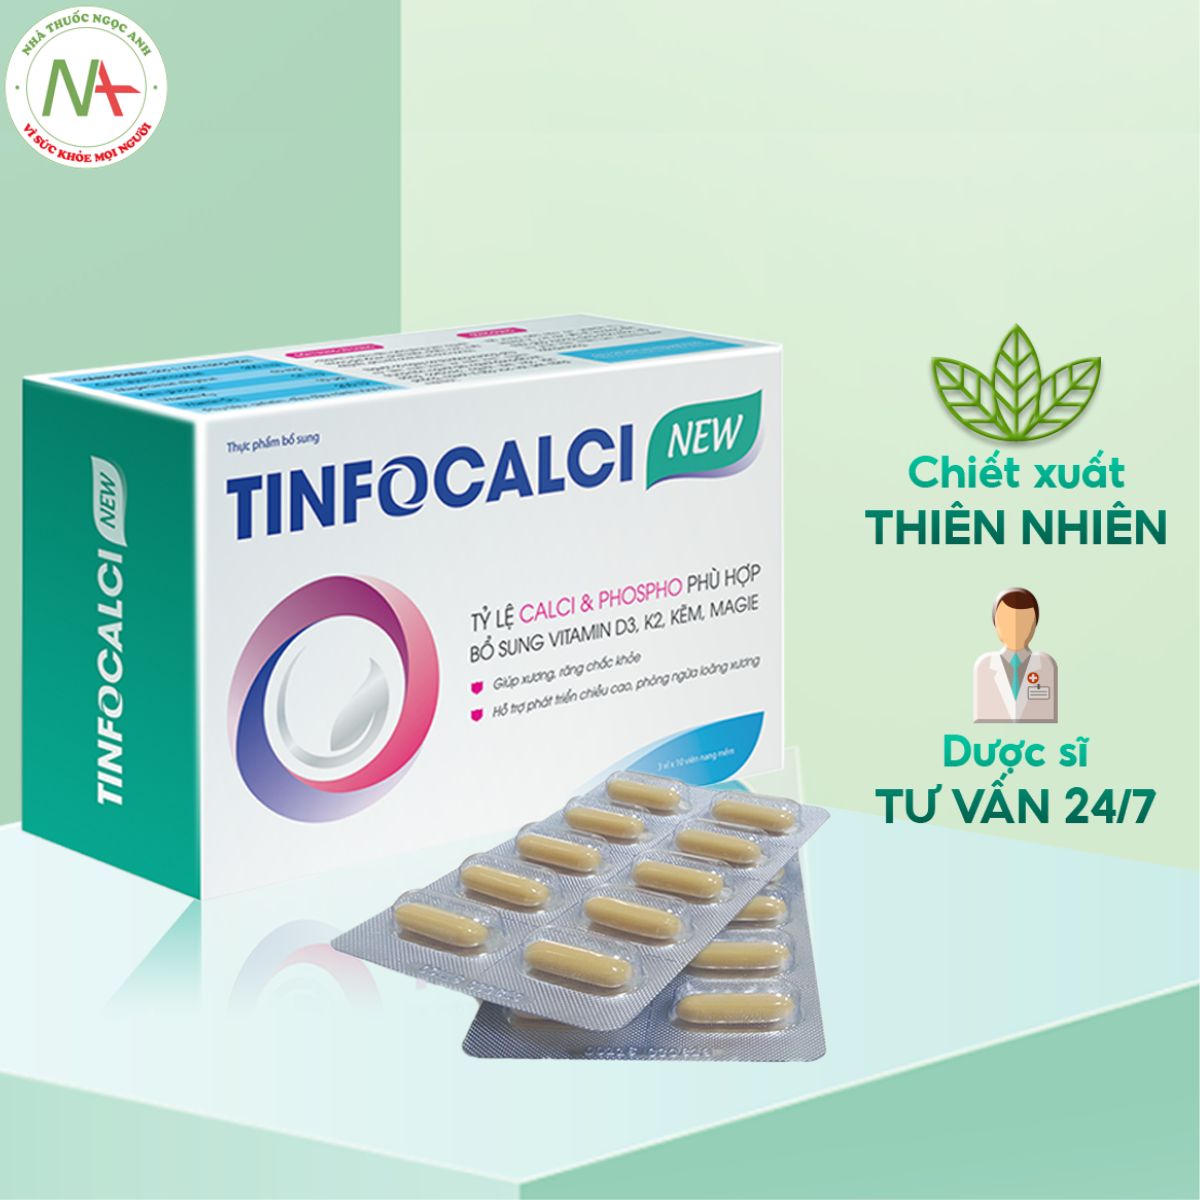 TinfoCalci chứa các thành phần hoàn toàn từ tự nhiên